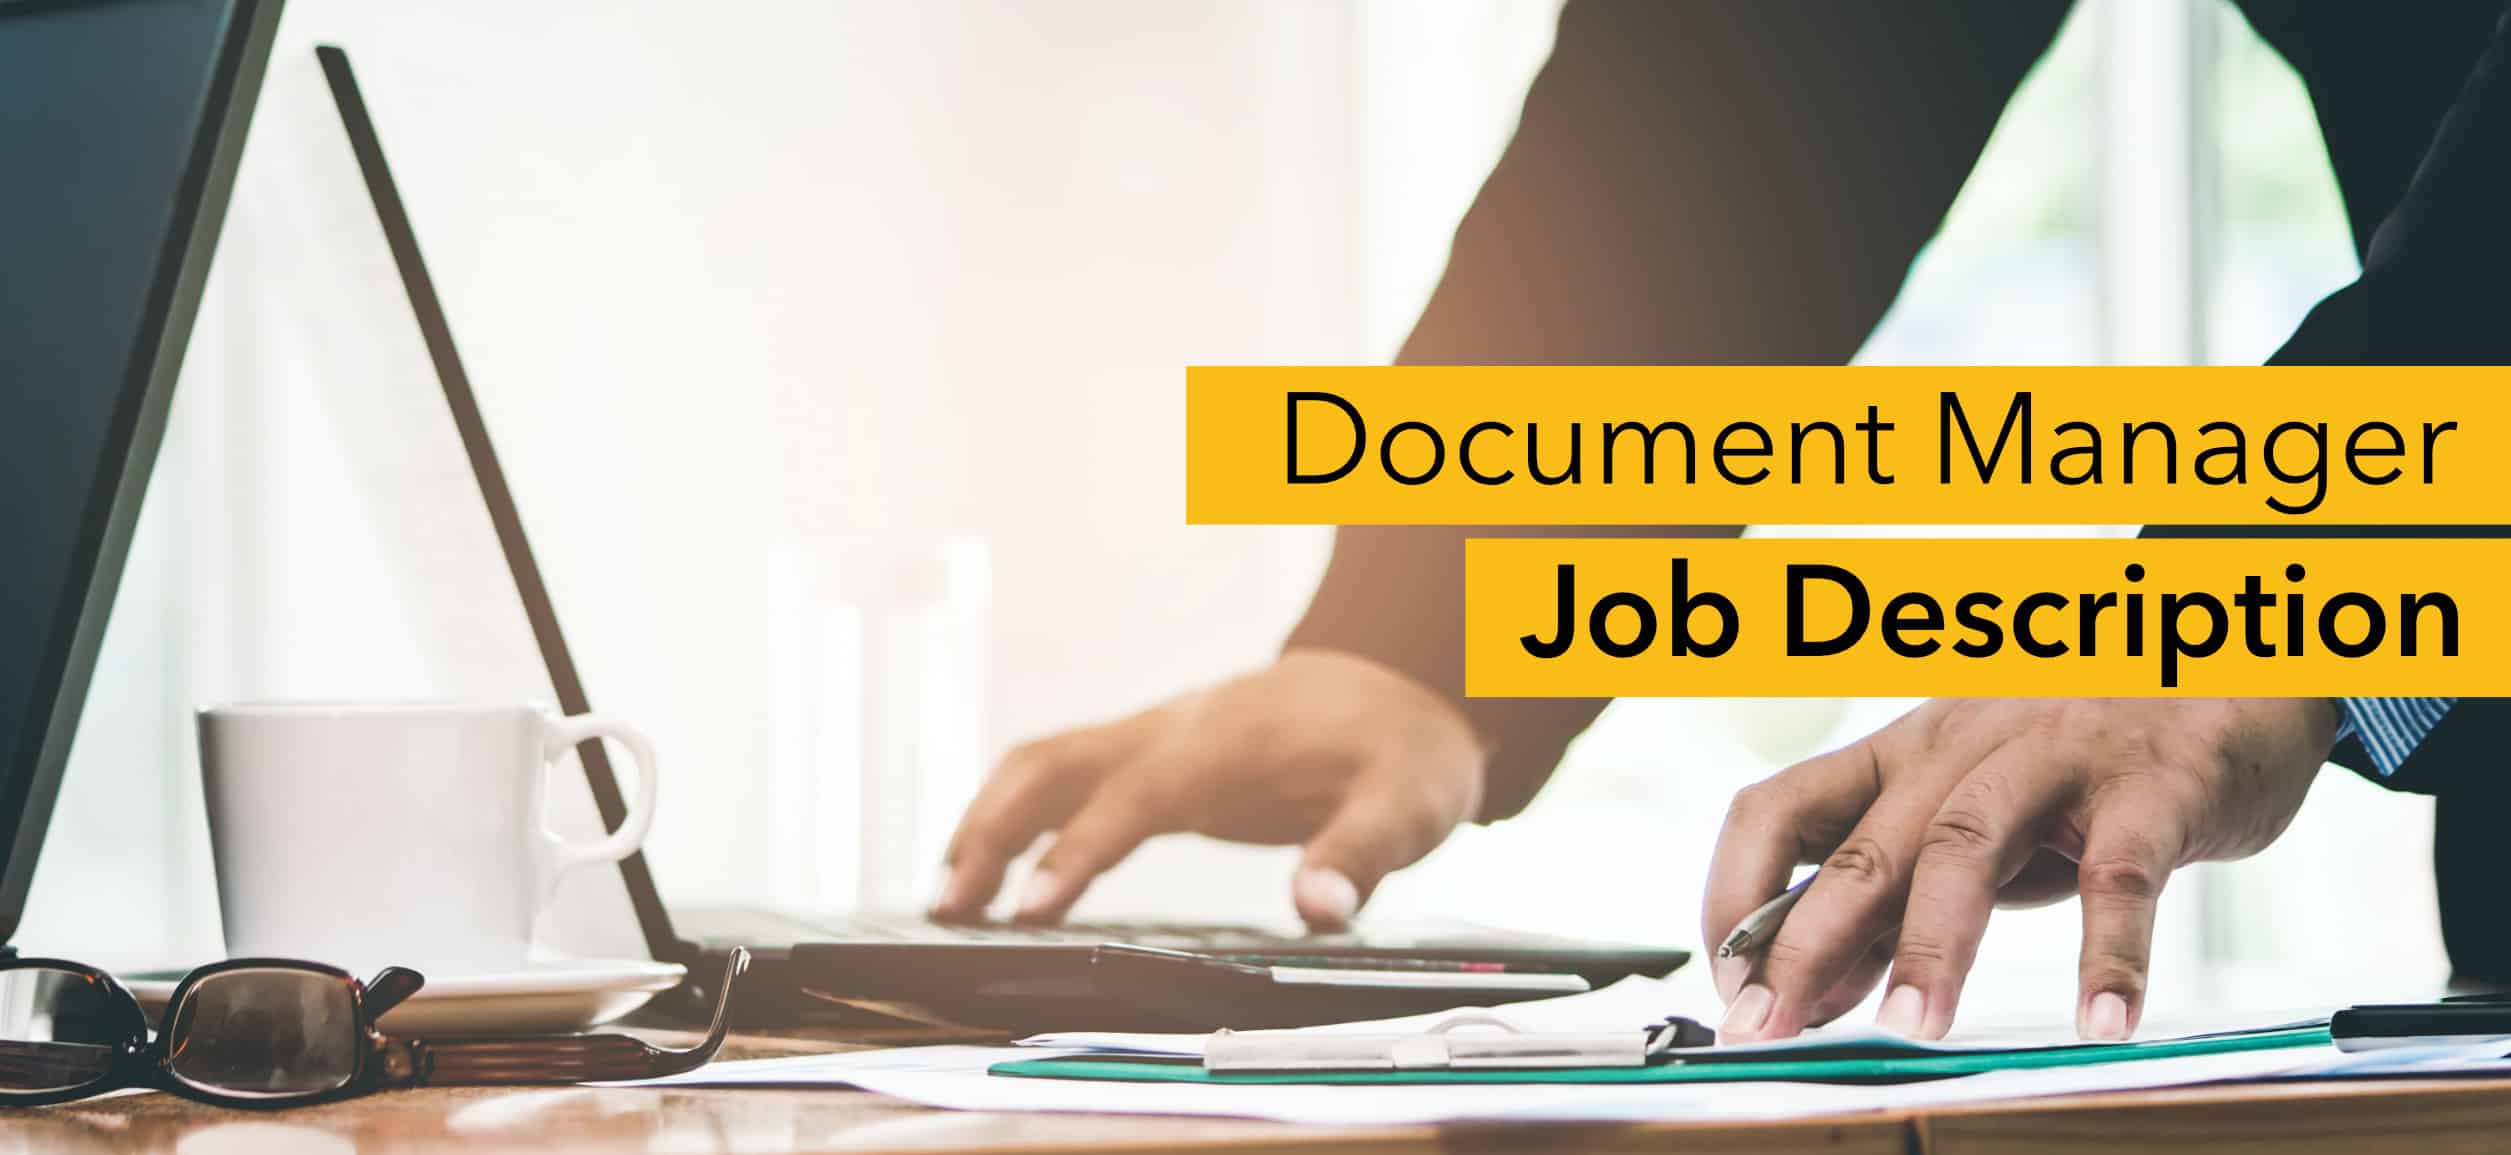 Document manager job description